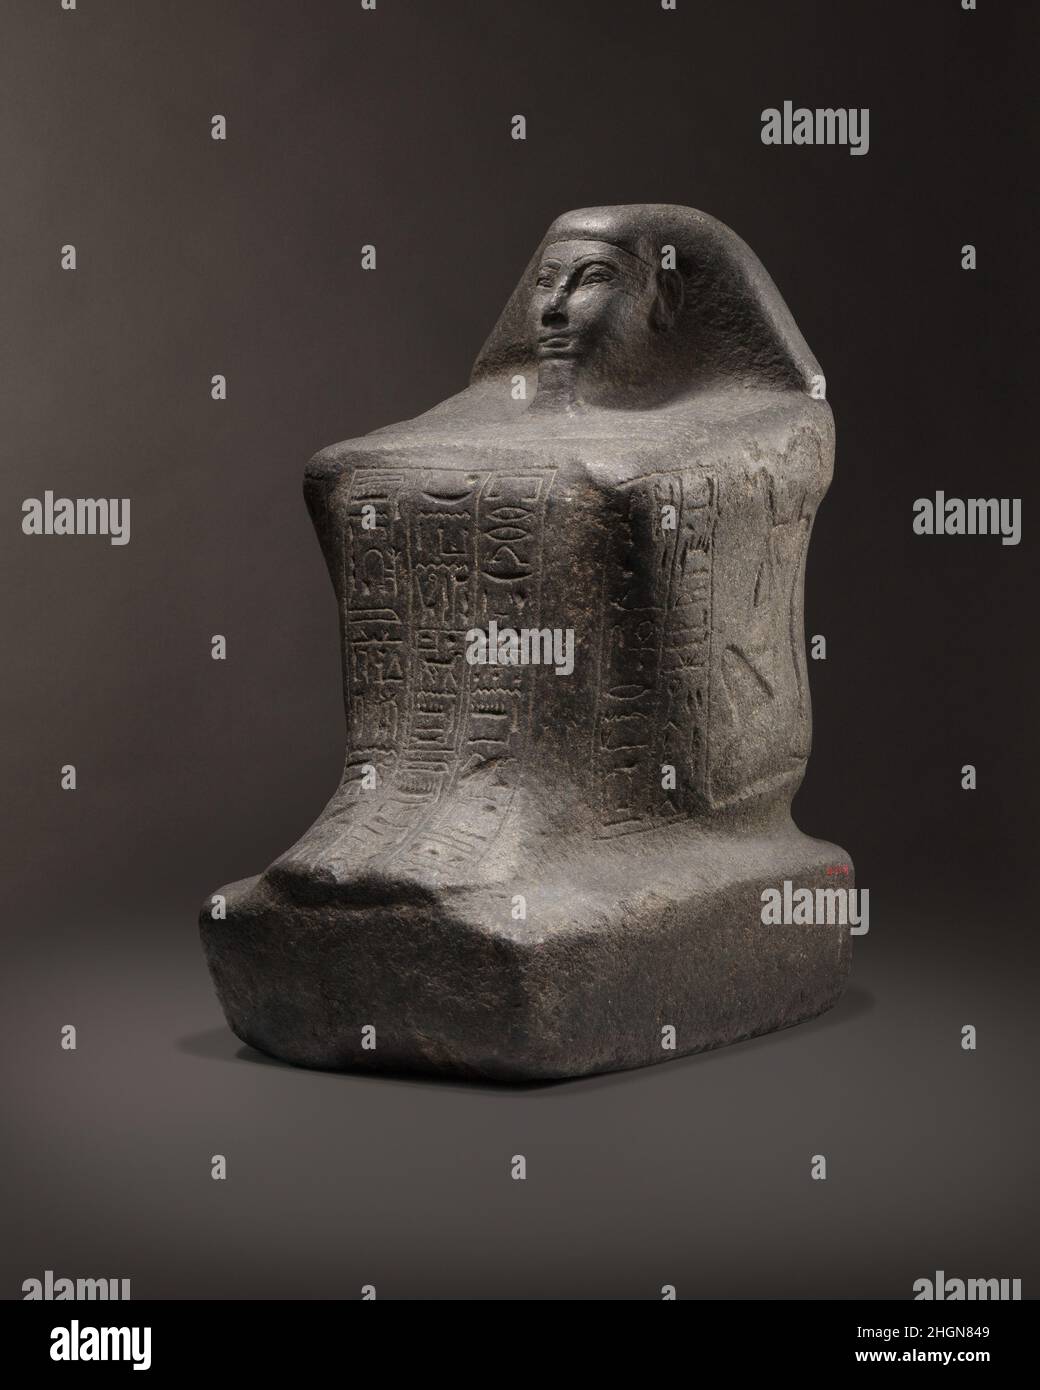 Bloque Estatua de Nedjem Ca. 1184–1153 A.C., el Imperio Nuevo, Ramesside Nedjem ocupó el cargo de 'Padre de dios' en el templo mortuorio del rey Merneptah durante el reinado de Ramsés III; los cartoctos de ambos gobernantes están inscritos en sus hombros. Su estatua lleva inscripciones en los cuatro lados; el panel frontal contiana una oración de ofrenda dirigida a la tríada tebana de Amón, Mut y Khonsu. Las representaciones de la esposa y el hijo de Nedjem aparecen en los lados derecho e izquierdo respectivamente. Nedjem dedicó esta estatua en el templo de la XI Dinastía de Mentuhotpe II en Deir el Bahri para que pudiera participar de th Foto de stock